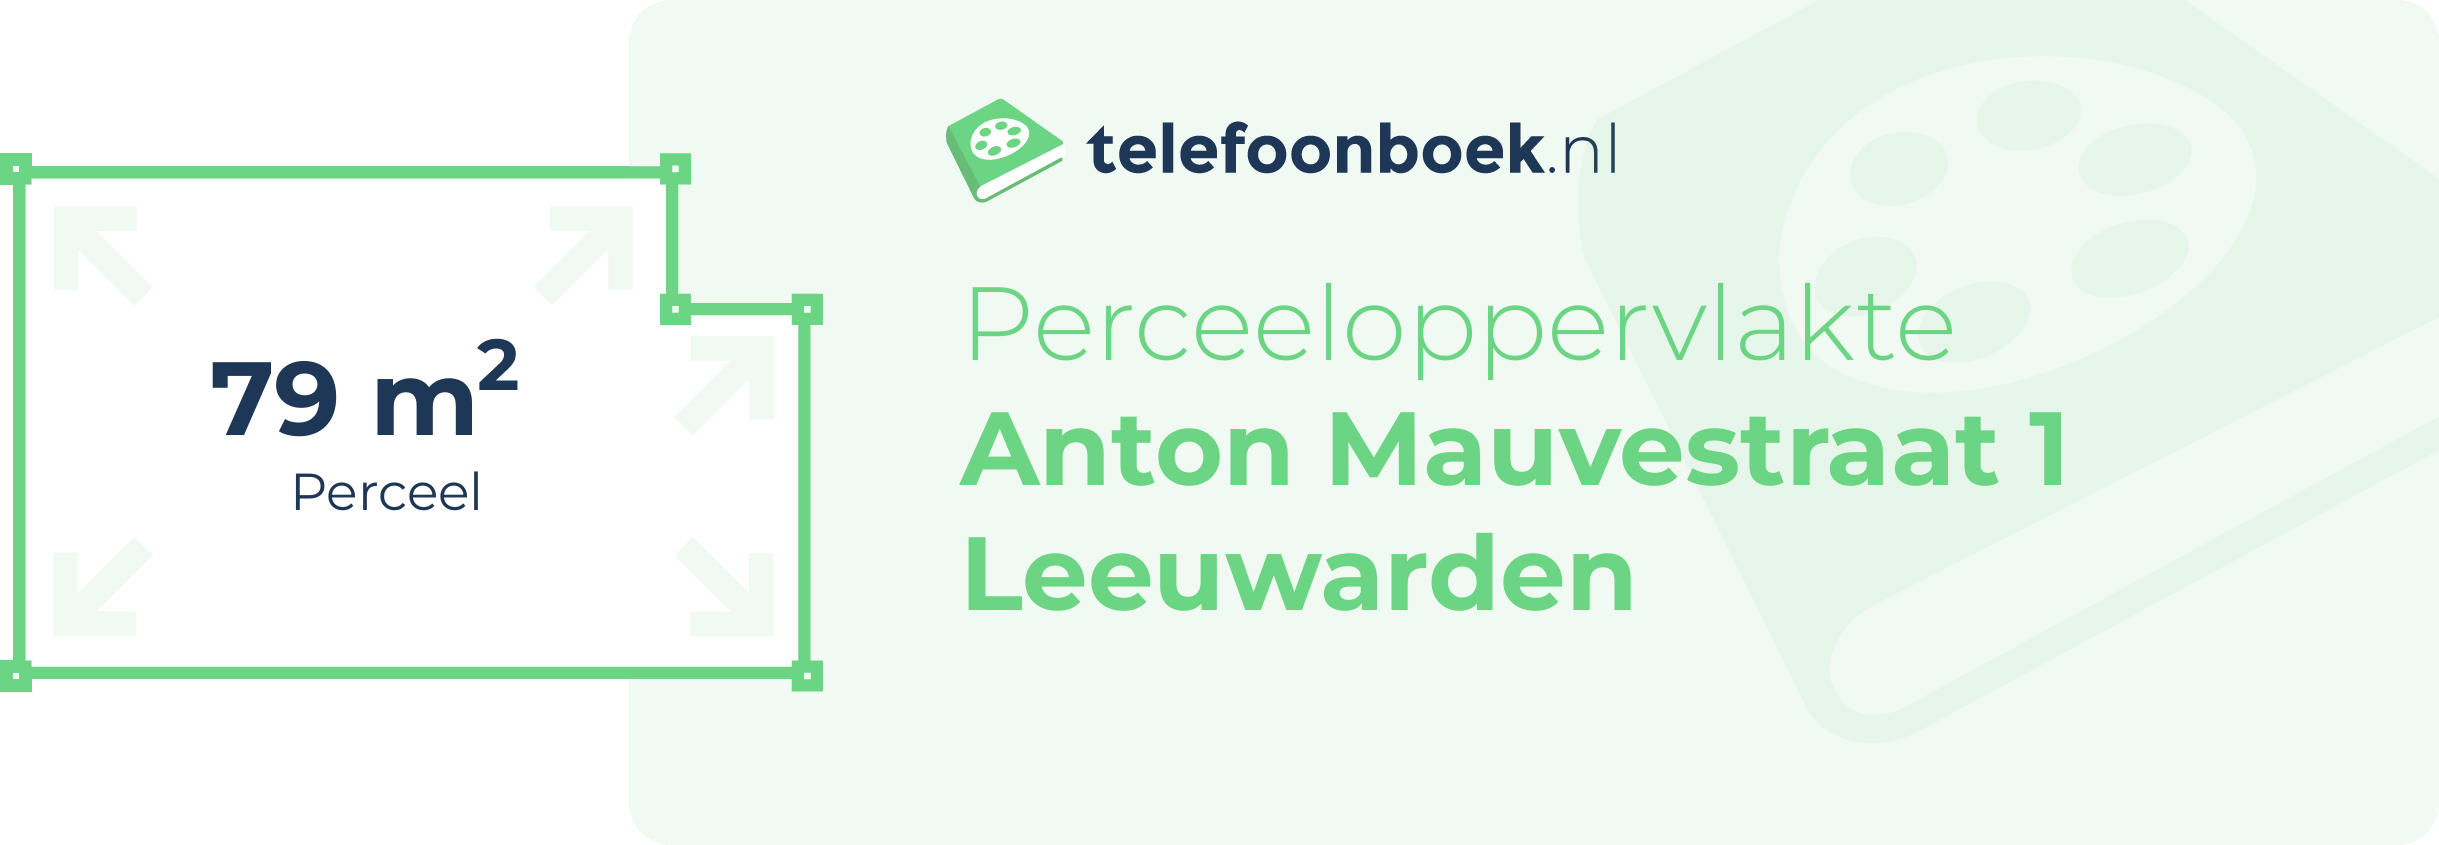 Perceeloppervlakte Anton Mauvestraat 1 Leeuwarden